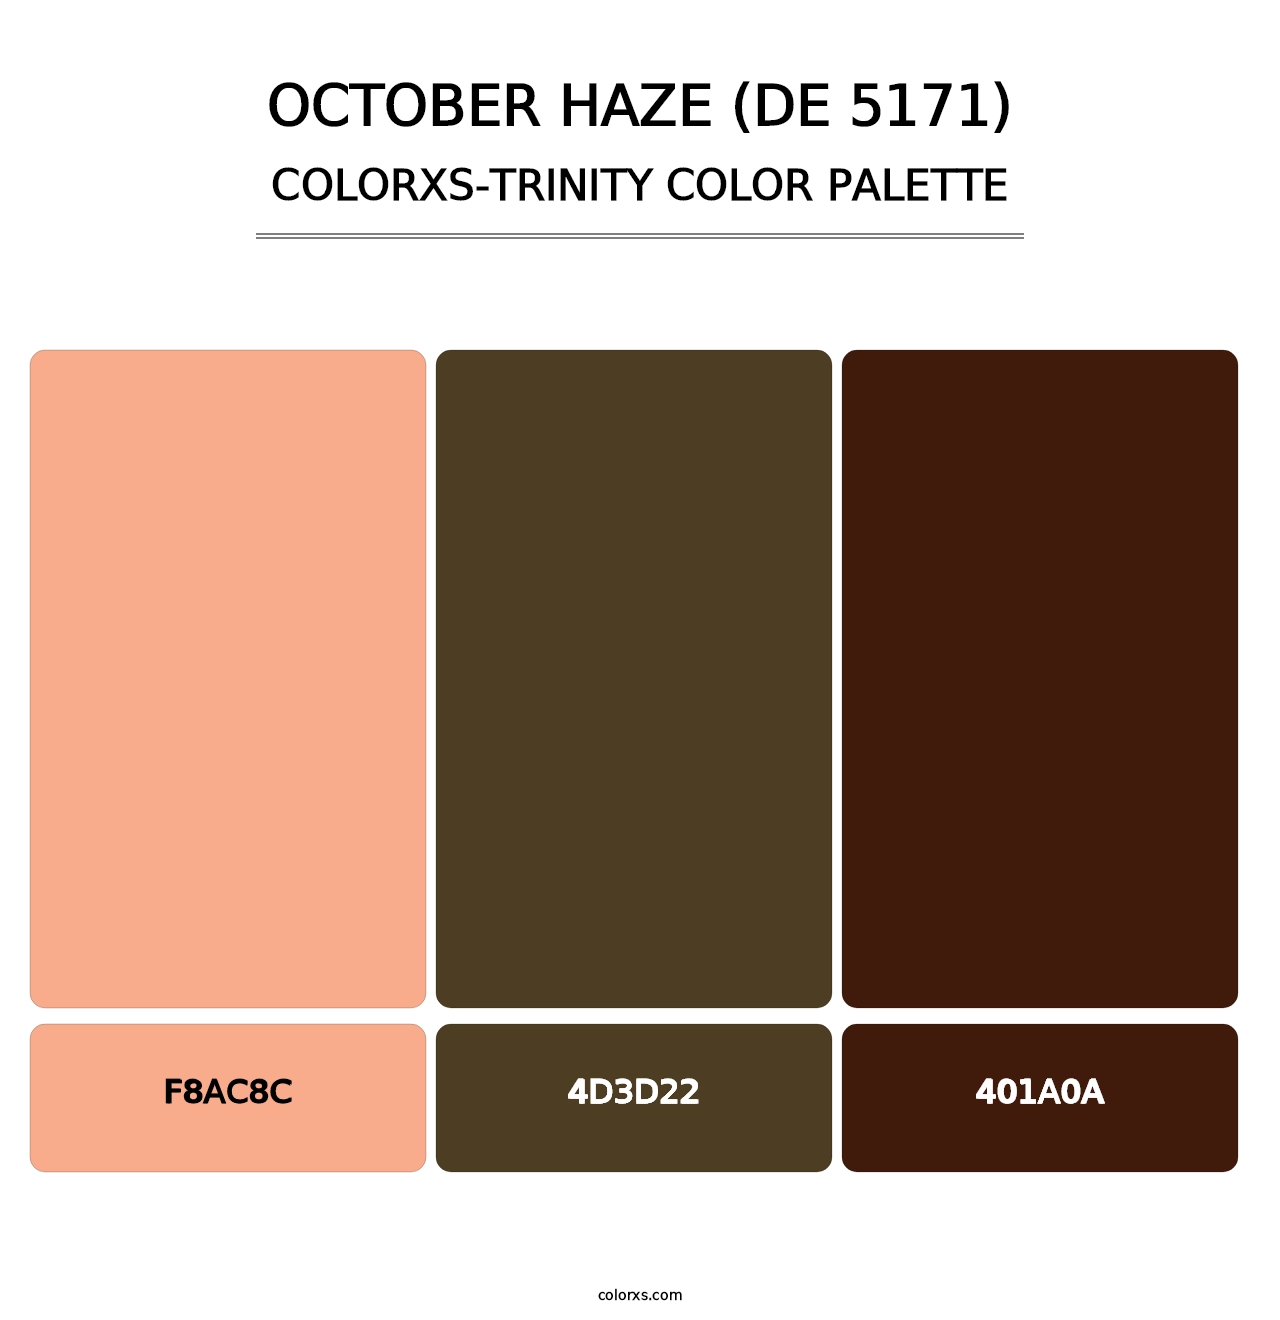 October Haze (DE 5171) - Colorxs Trinity Palette